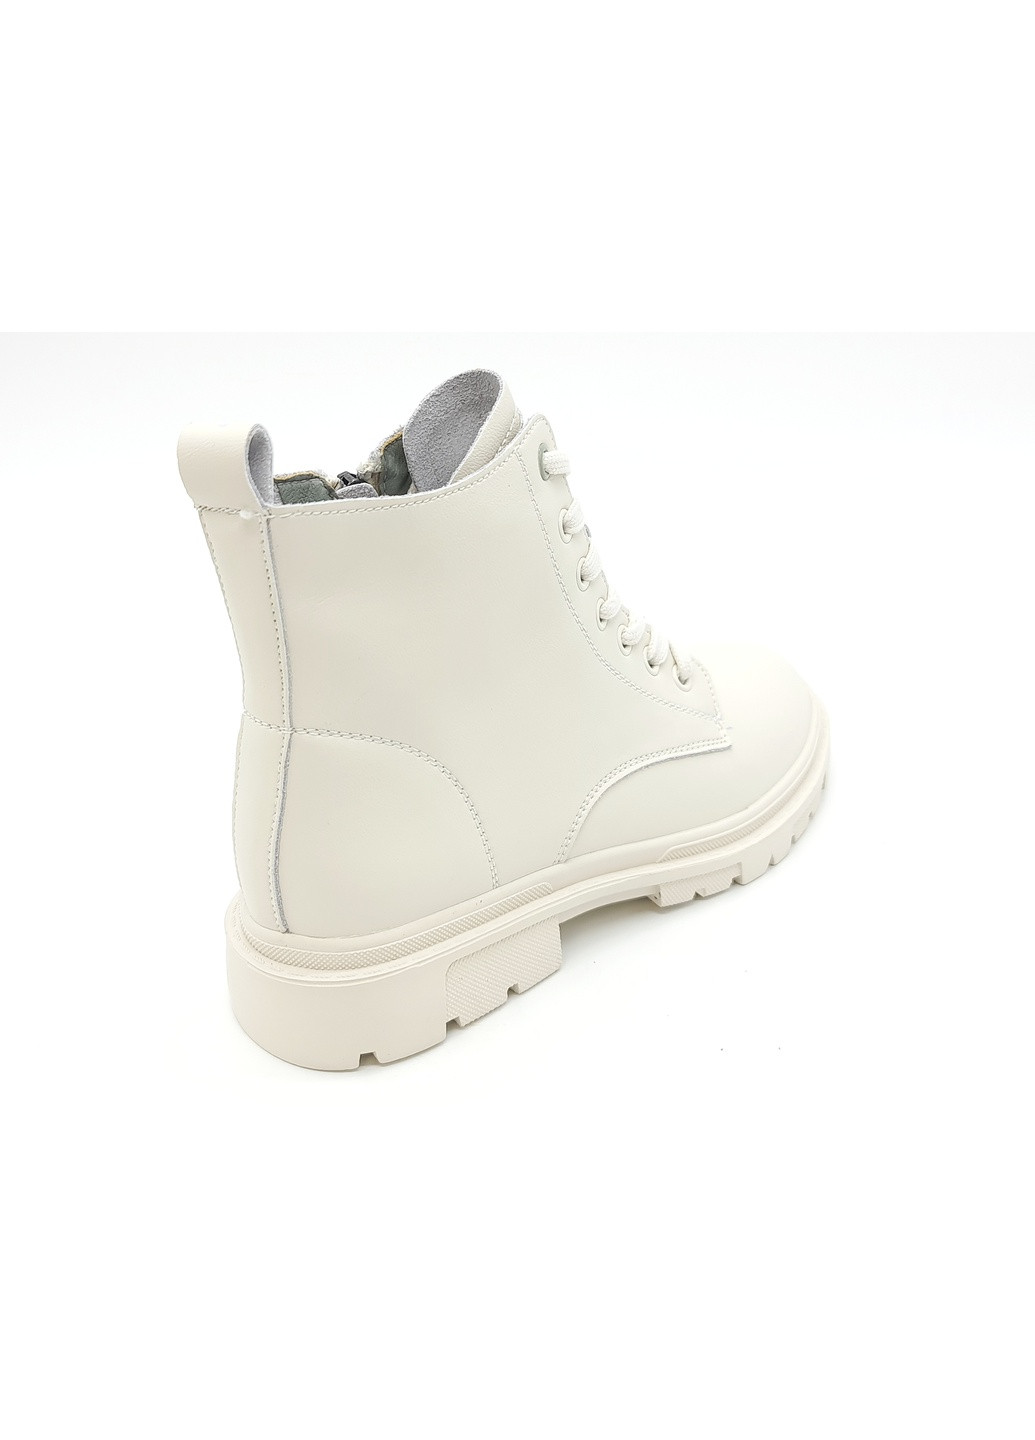 Осенние женские ботинки белые кожаные l-11-11 24 см (р) Lonza